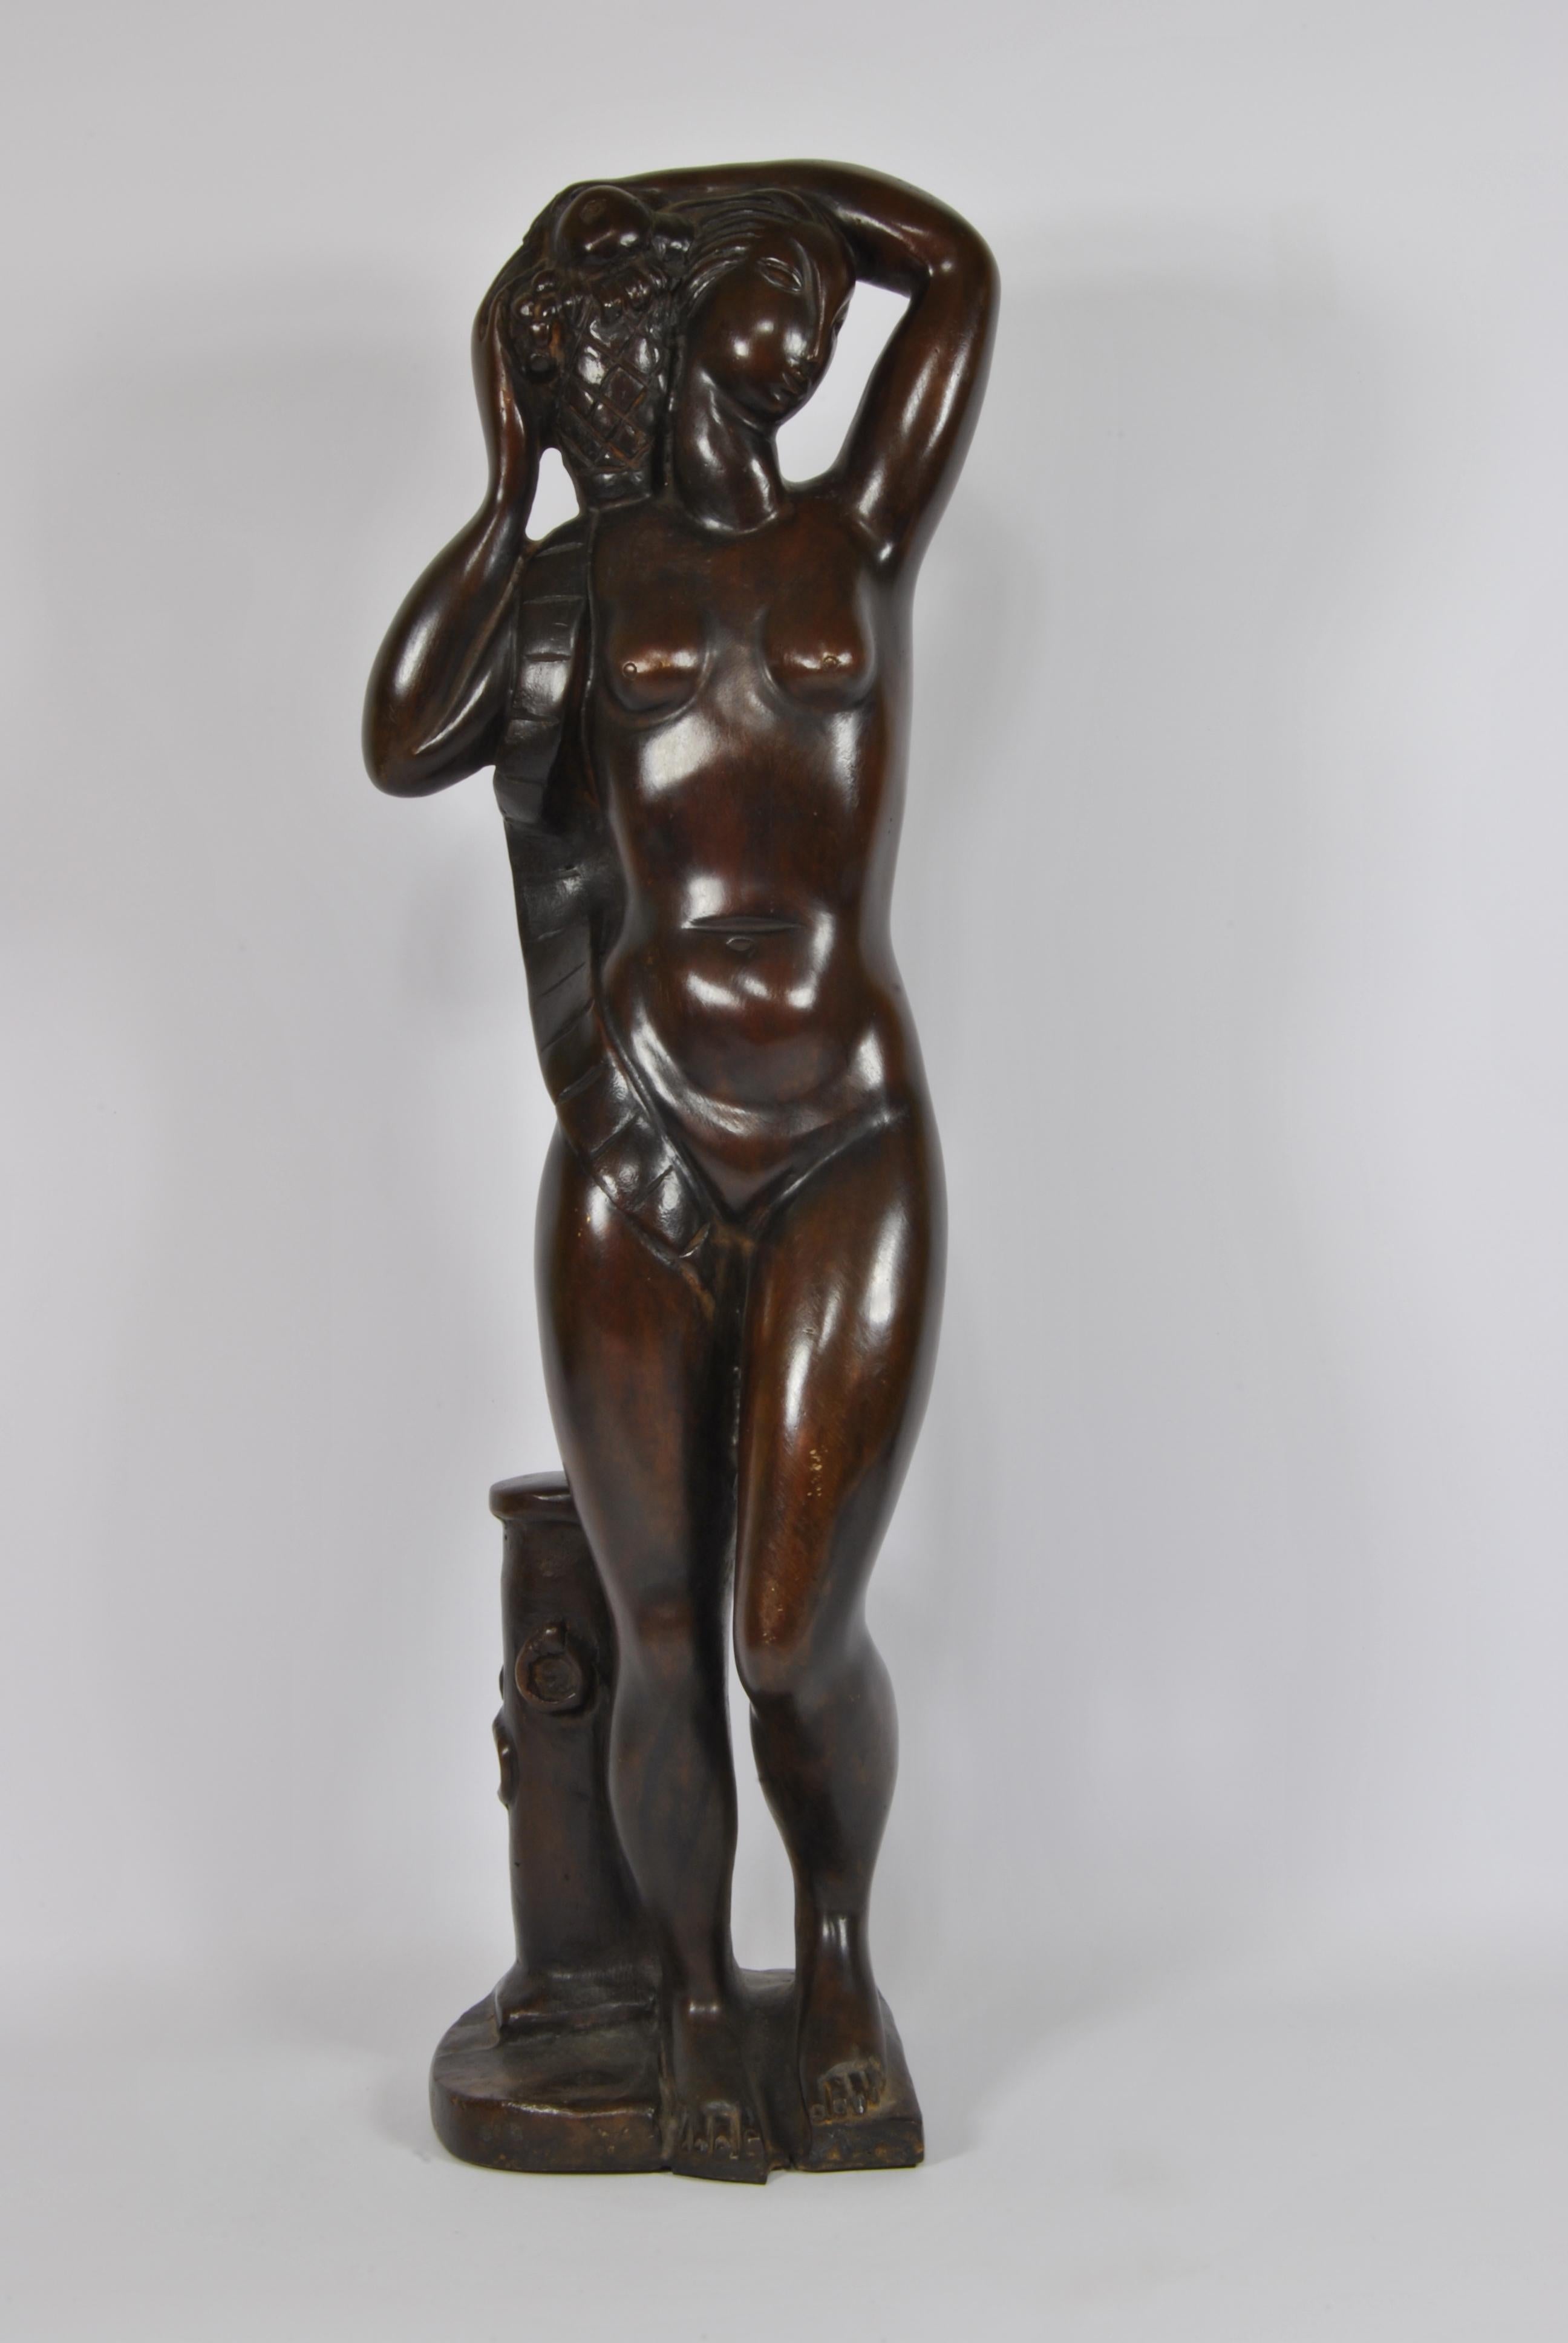 Sculpture Art Déco entièrement en bronze, signée par le sculpteur Celano France 1940.
La sculpture porte la signature gravée 